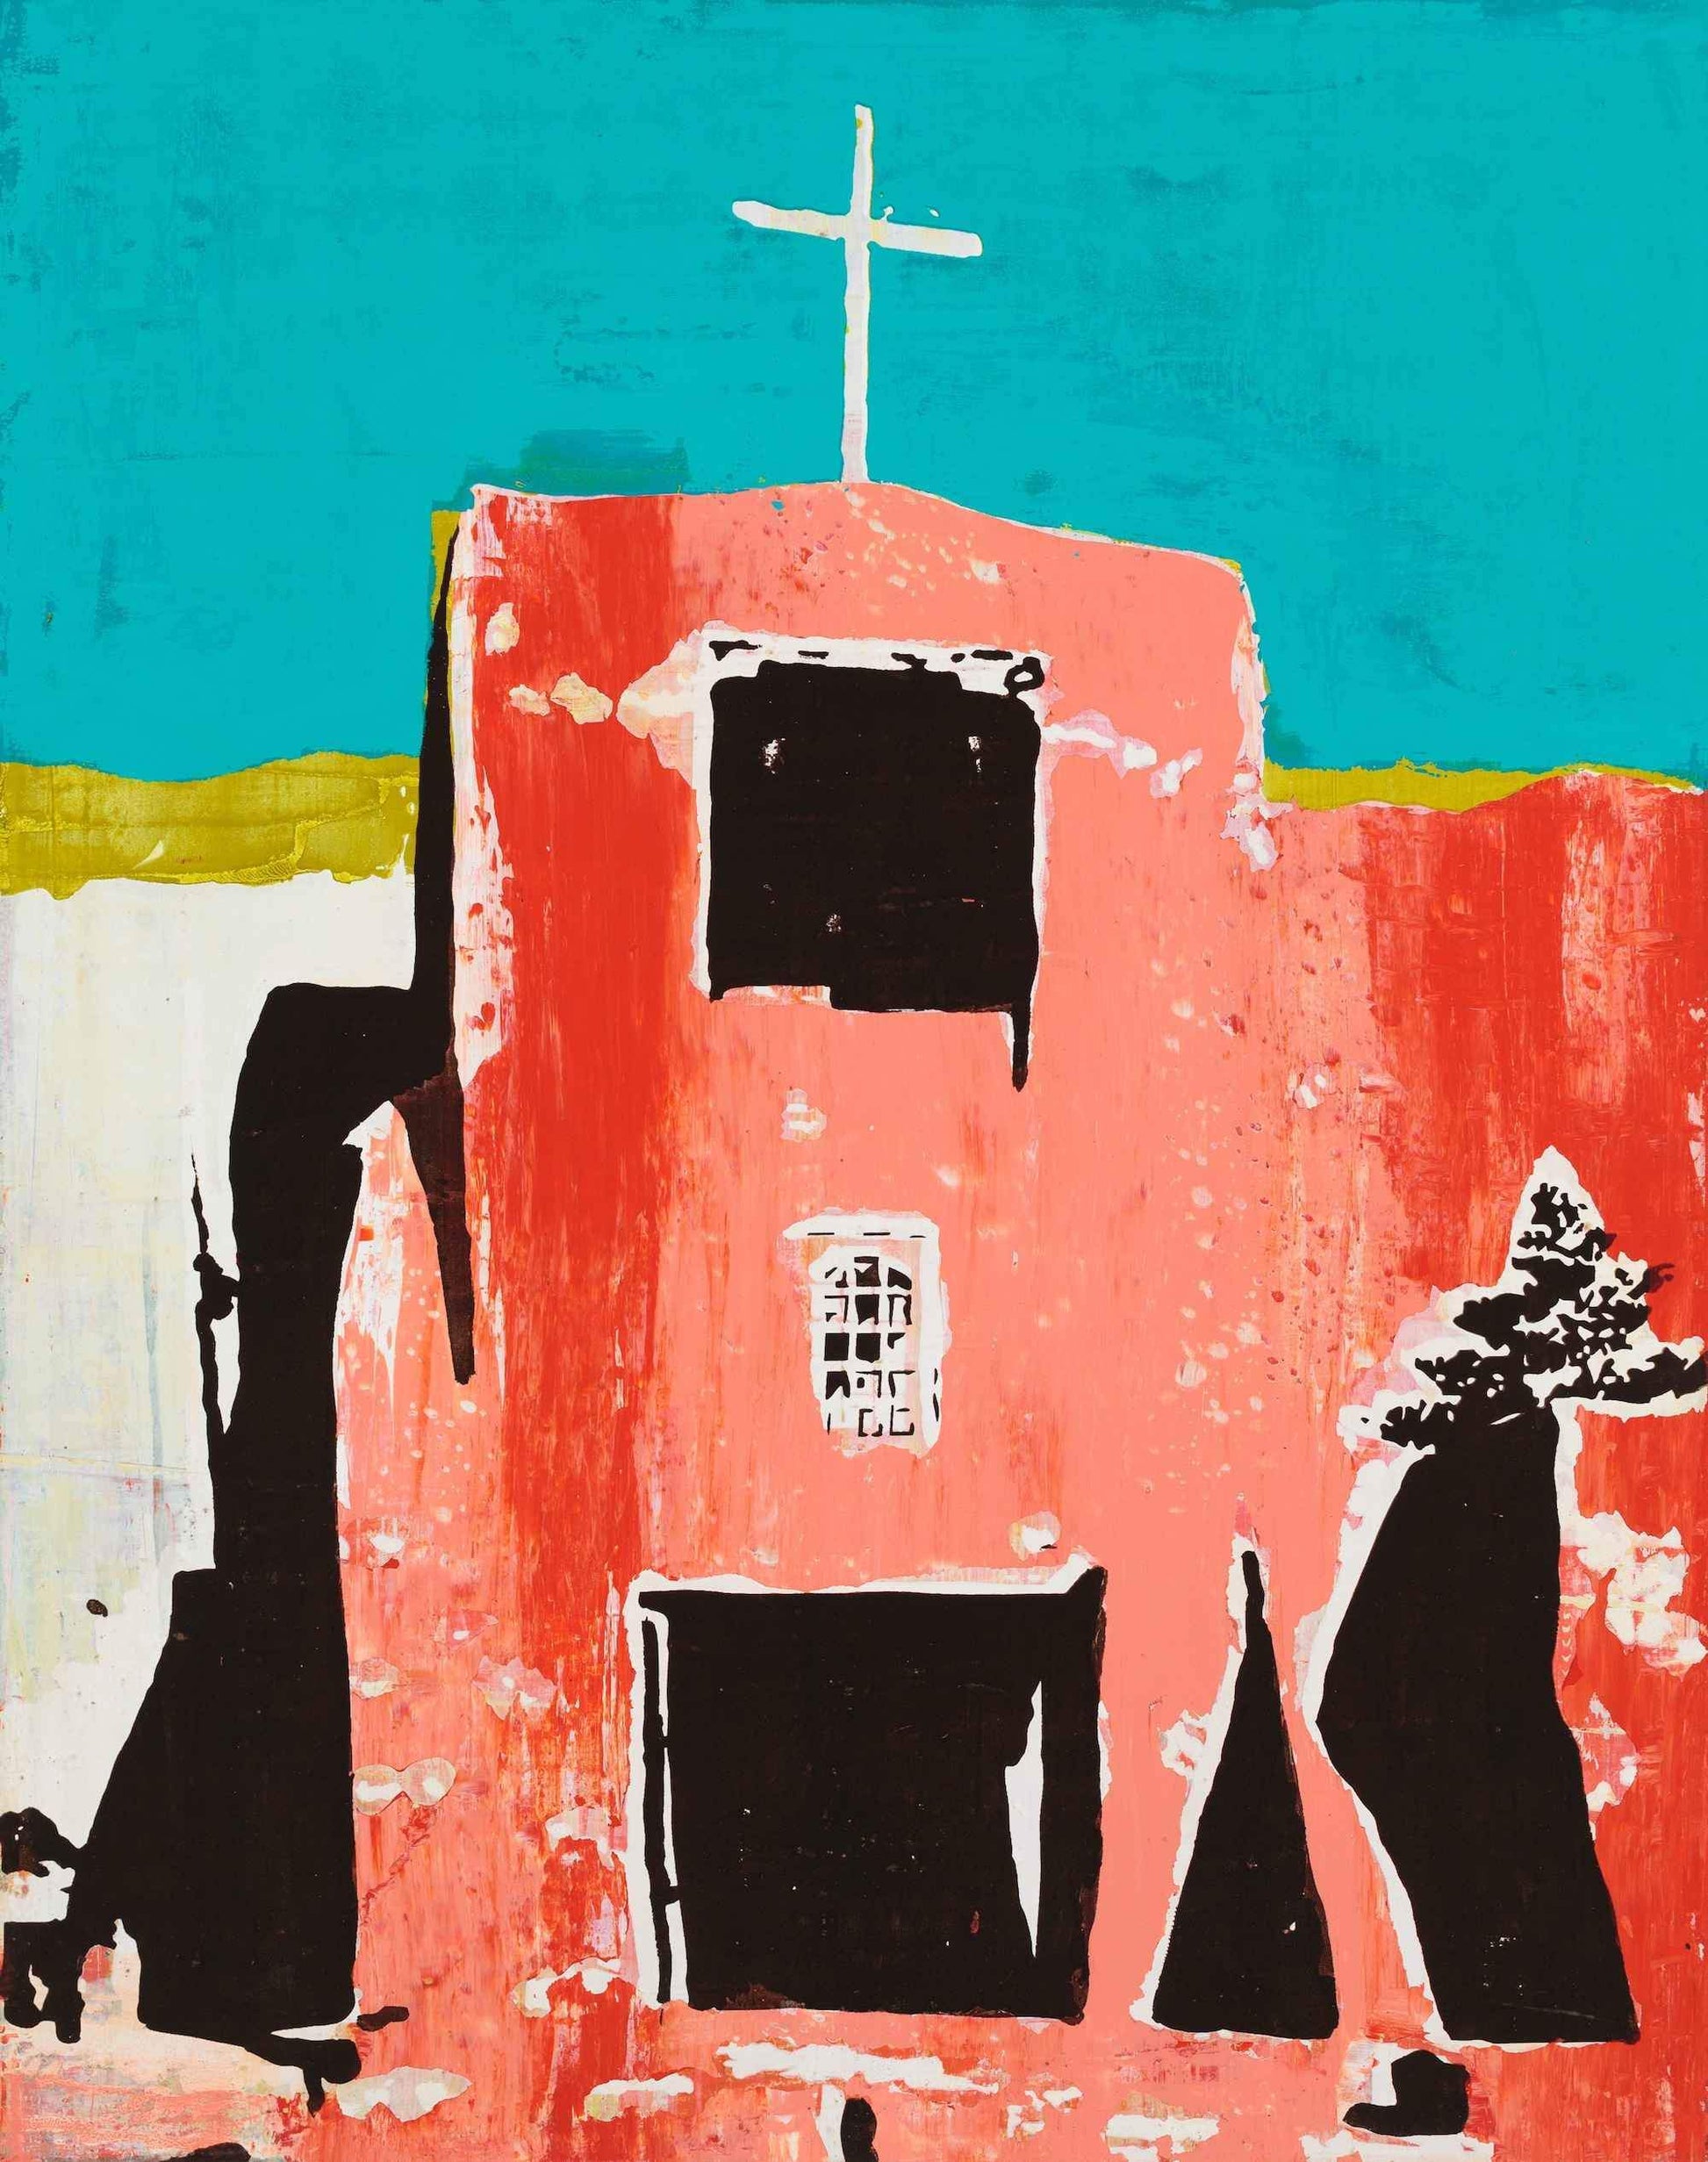 Maura Allen-Capilla San Miguel - Santa Fe-Sorrel Sky Gallery-Painting